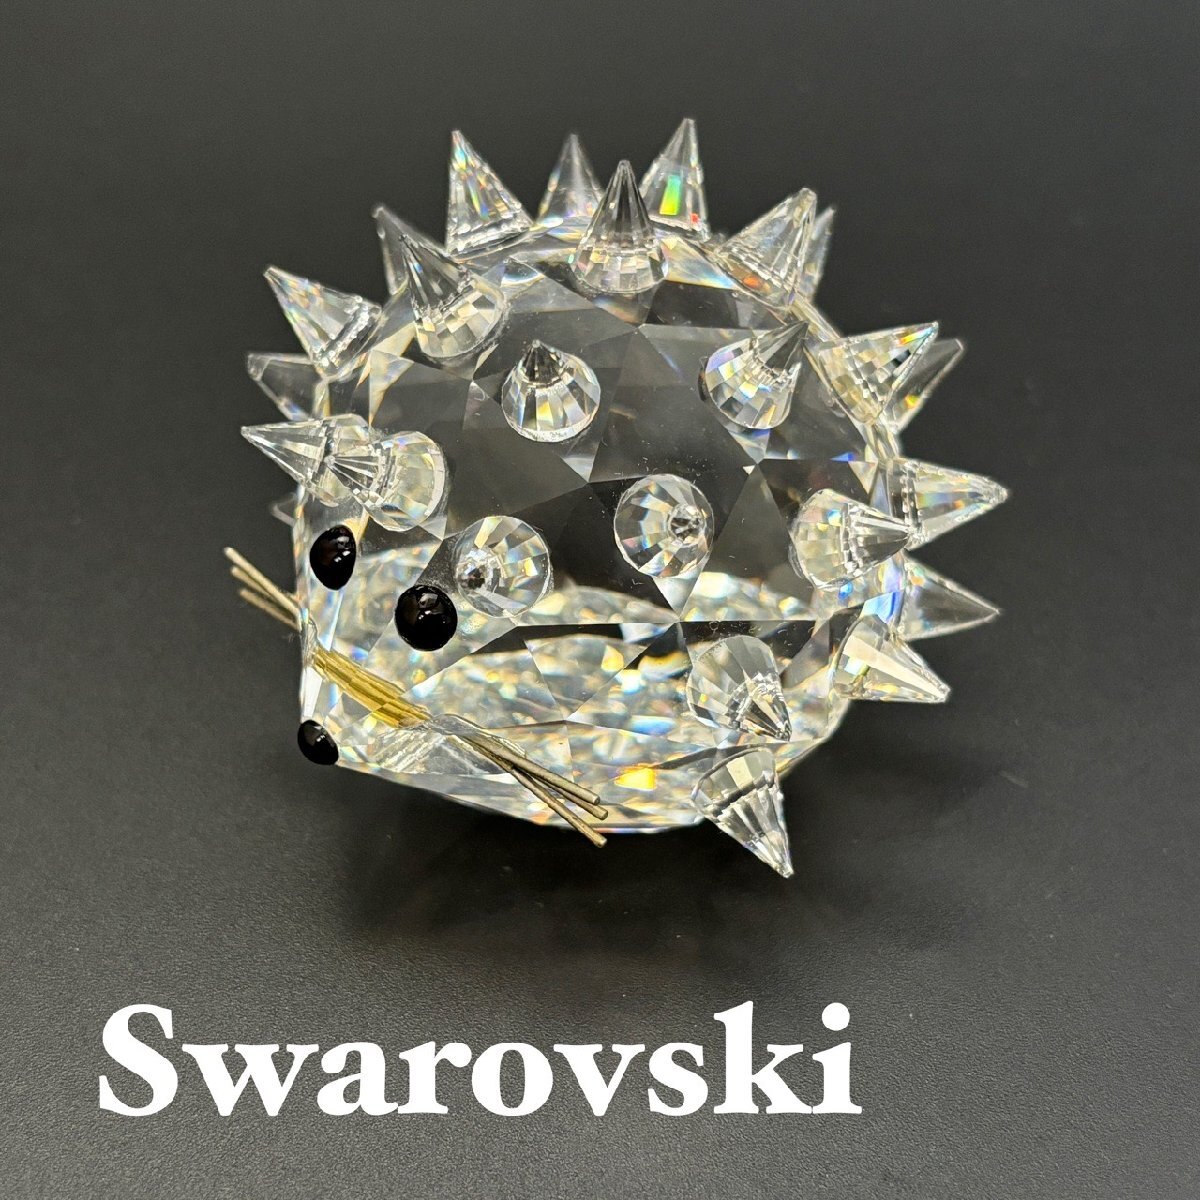 SWAROVSKI スワロフスキー クリスタル ハリネズミ クリスタルガラス フィギュリン オブジェ 置物 ペーパーウェイトの画像1